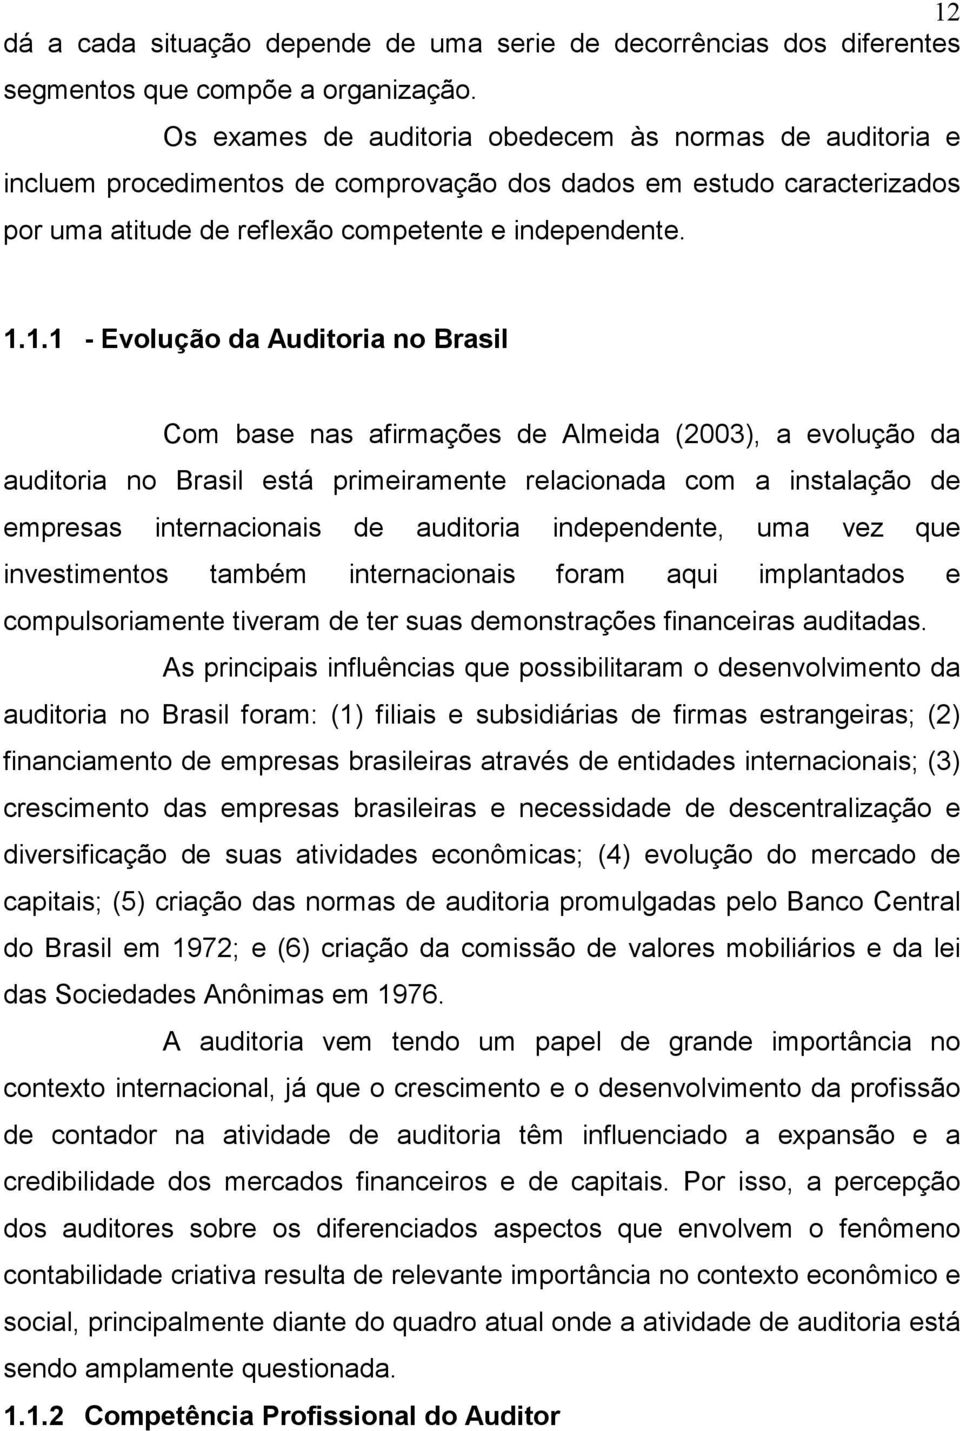 1.1 - Evolução da Auditoria no Brasil Com base nas afirmações de Almeida (2003), a evolução da auditoria no Brasil está primeiramente relacionada com a instalação de empresas internacionais de